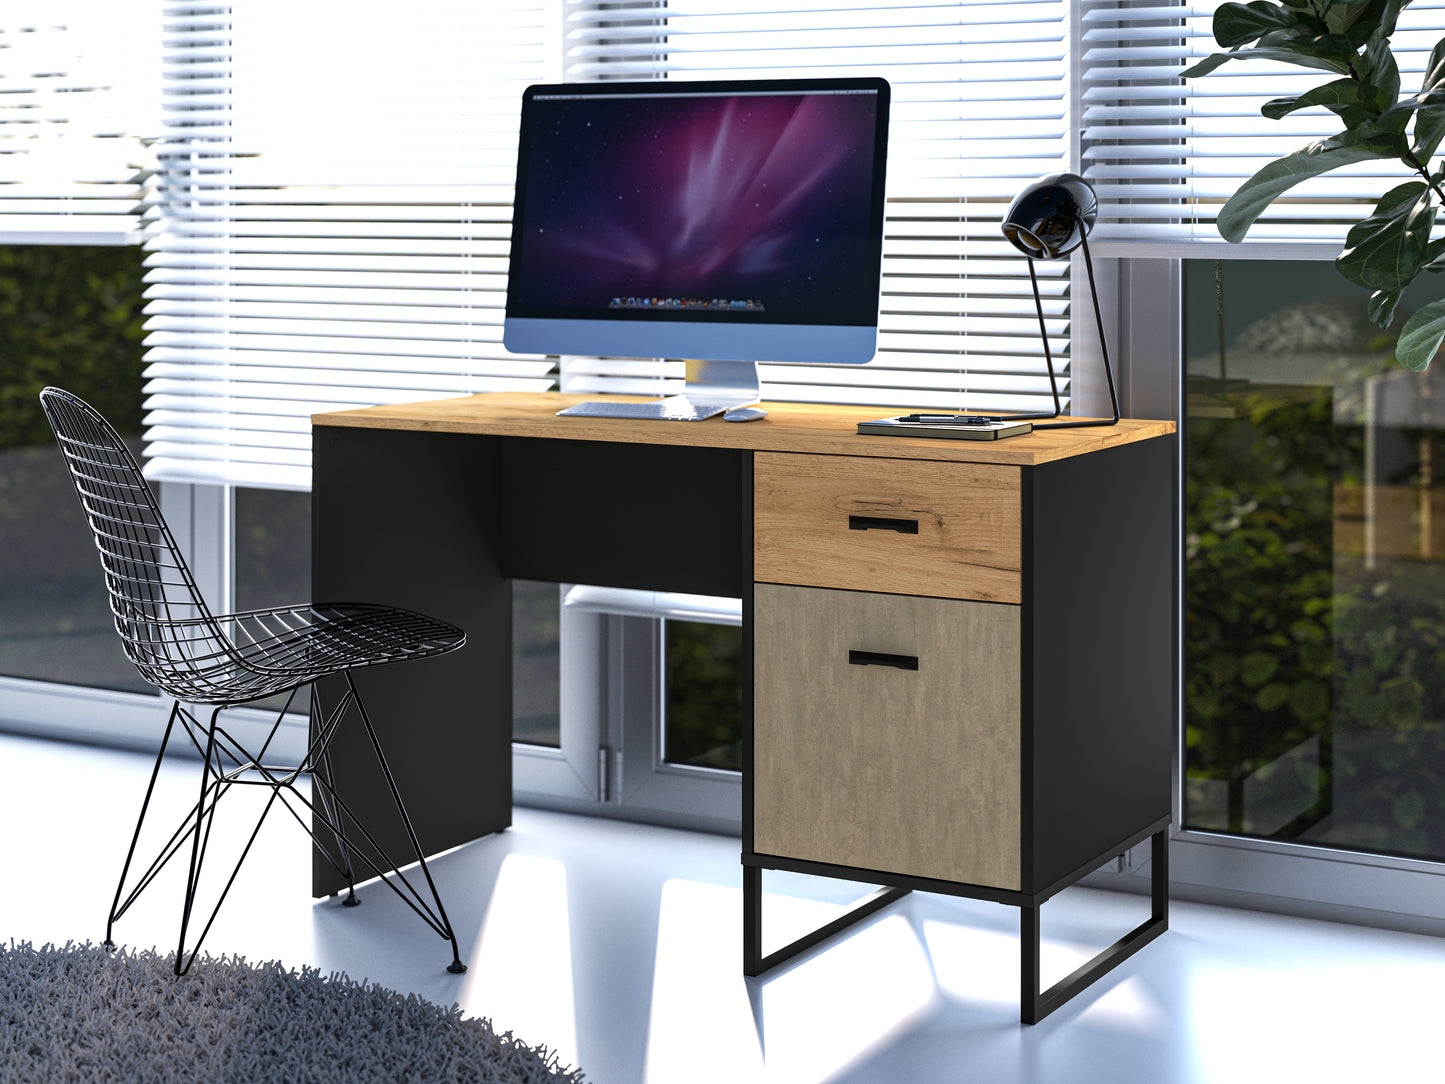 Zdjęcie przedstawiające przykładową aranżację nowoczesnego biurka w gabinecie. Szeroki blat 120 cm pozwoli na komfortową pracę lub naukę. Modne biurko w stylu loft podkreśli elegancję pomieszczenia. 